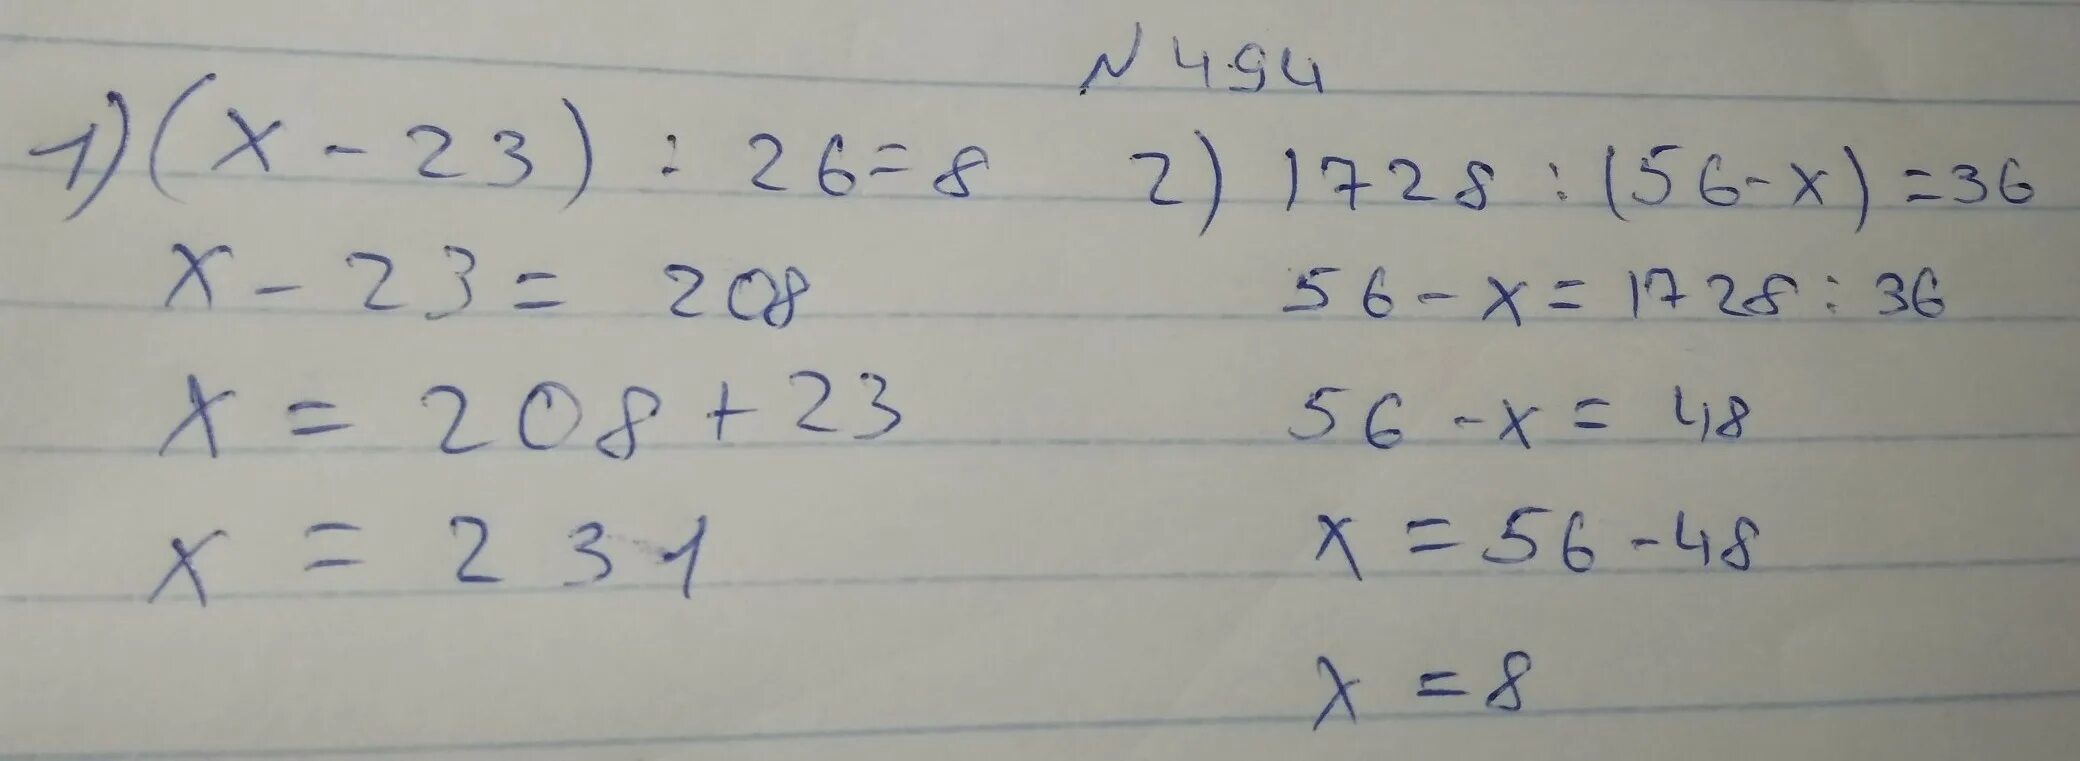 8 8 91 ответ. (Х-23):26=8 решение. 1728:(56-Х)=36. (Х-23):26=8. Решение уравнения х-56=23.